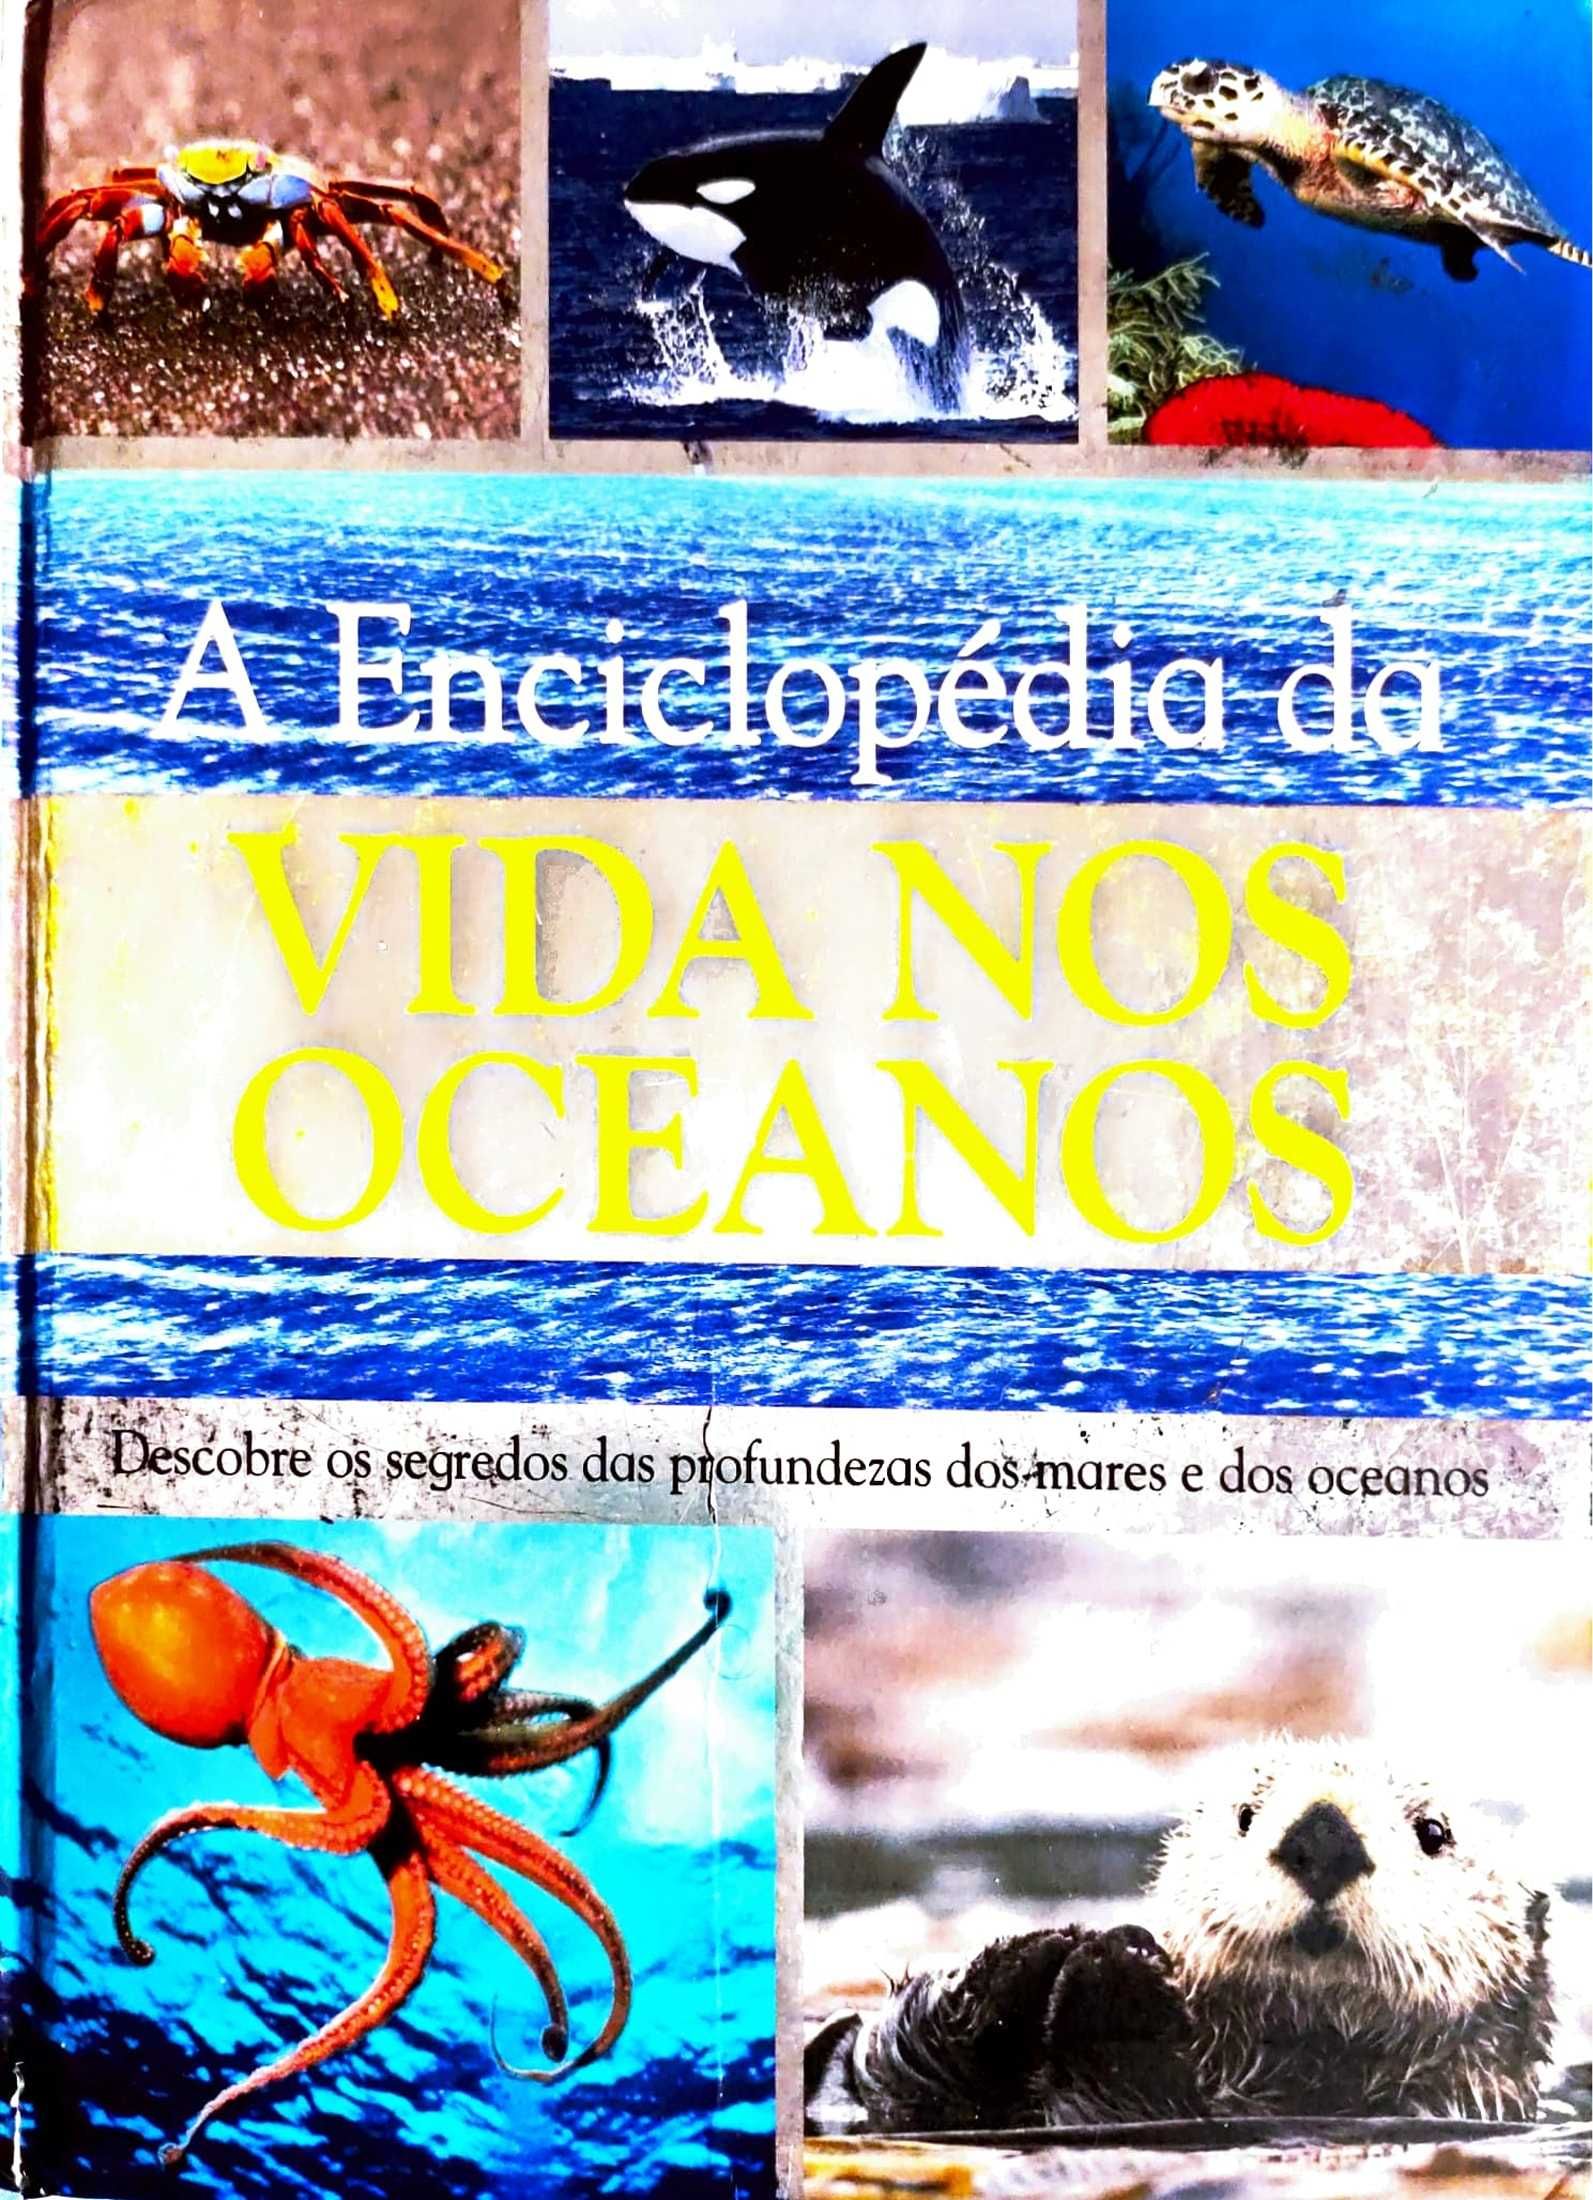 A enciclopédia da vida nos oceanos